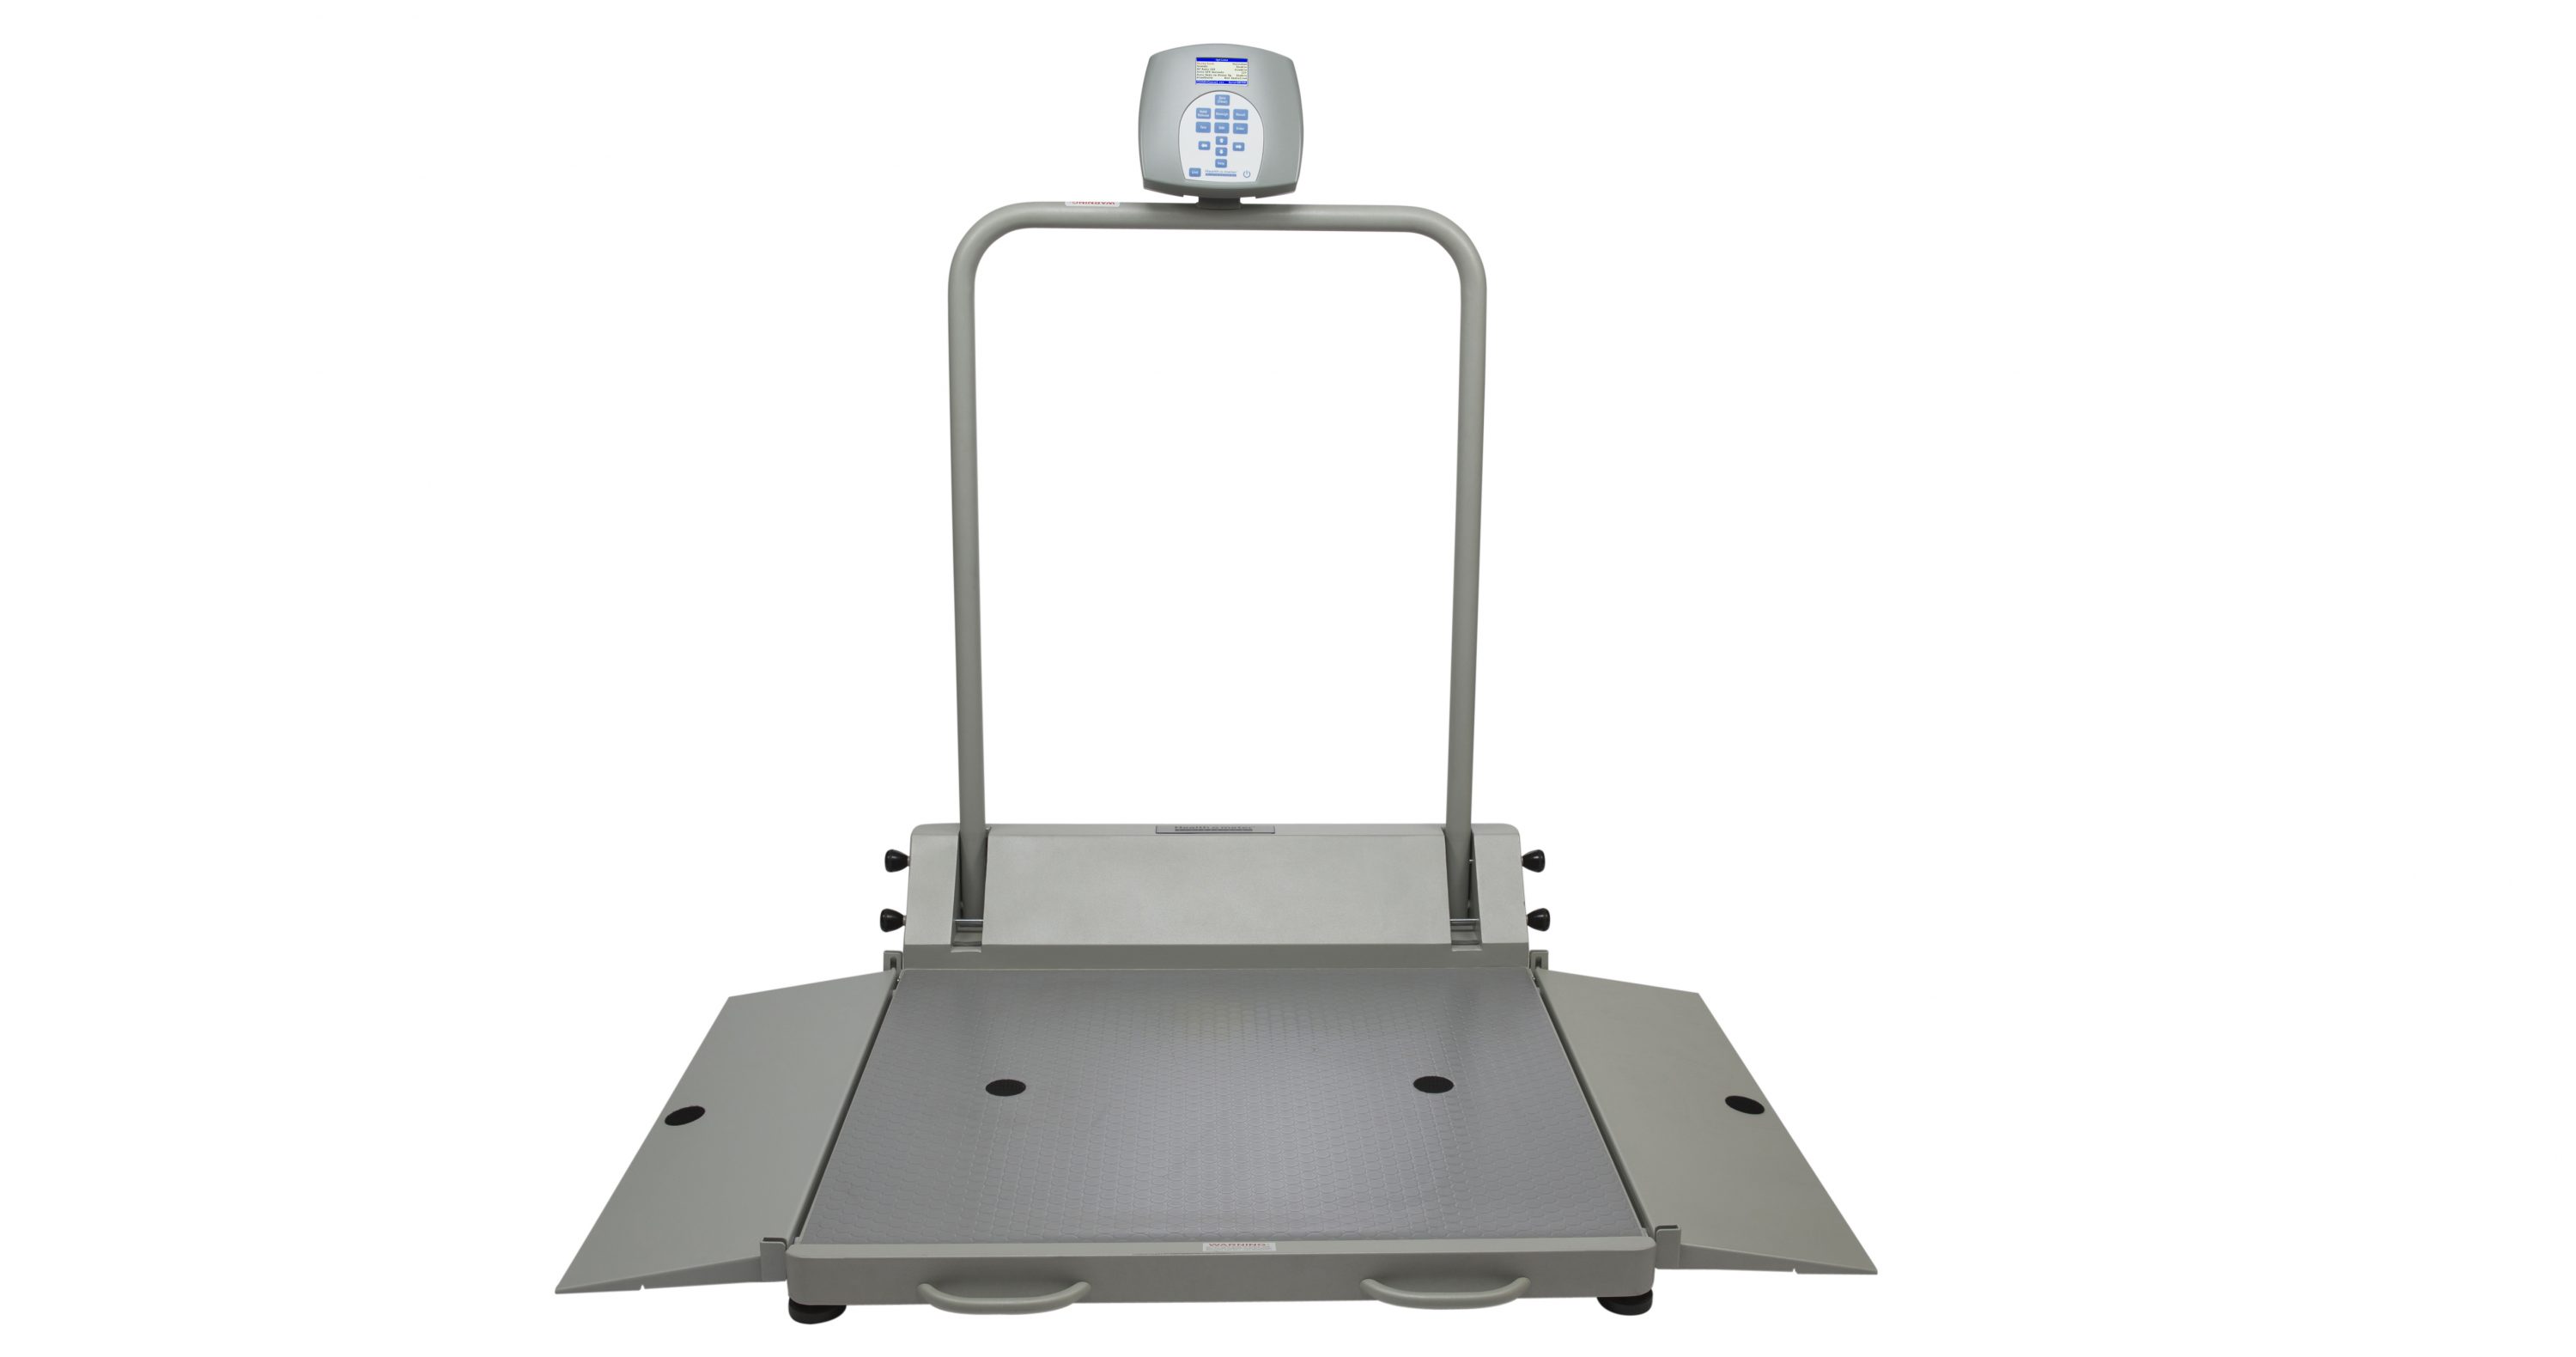 High Capacity Digital Floor Scale by Health O Meter